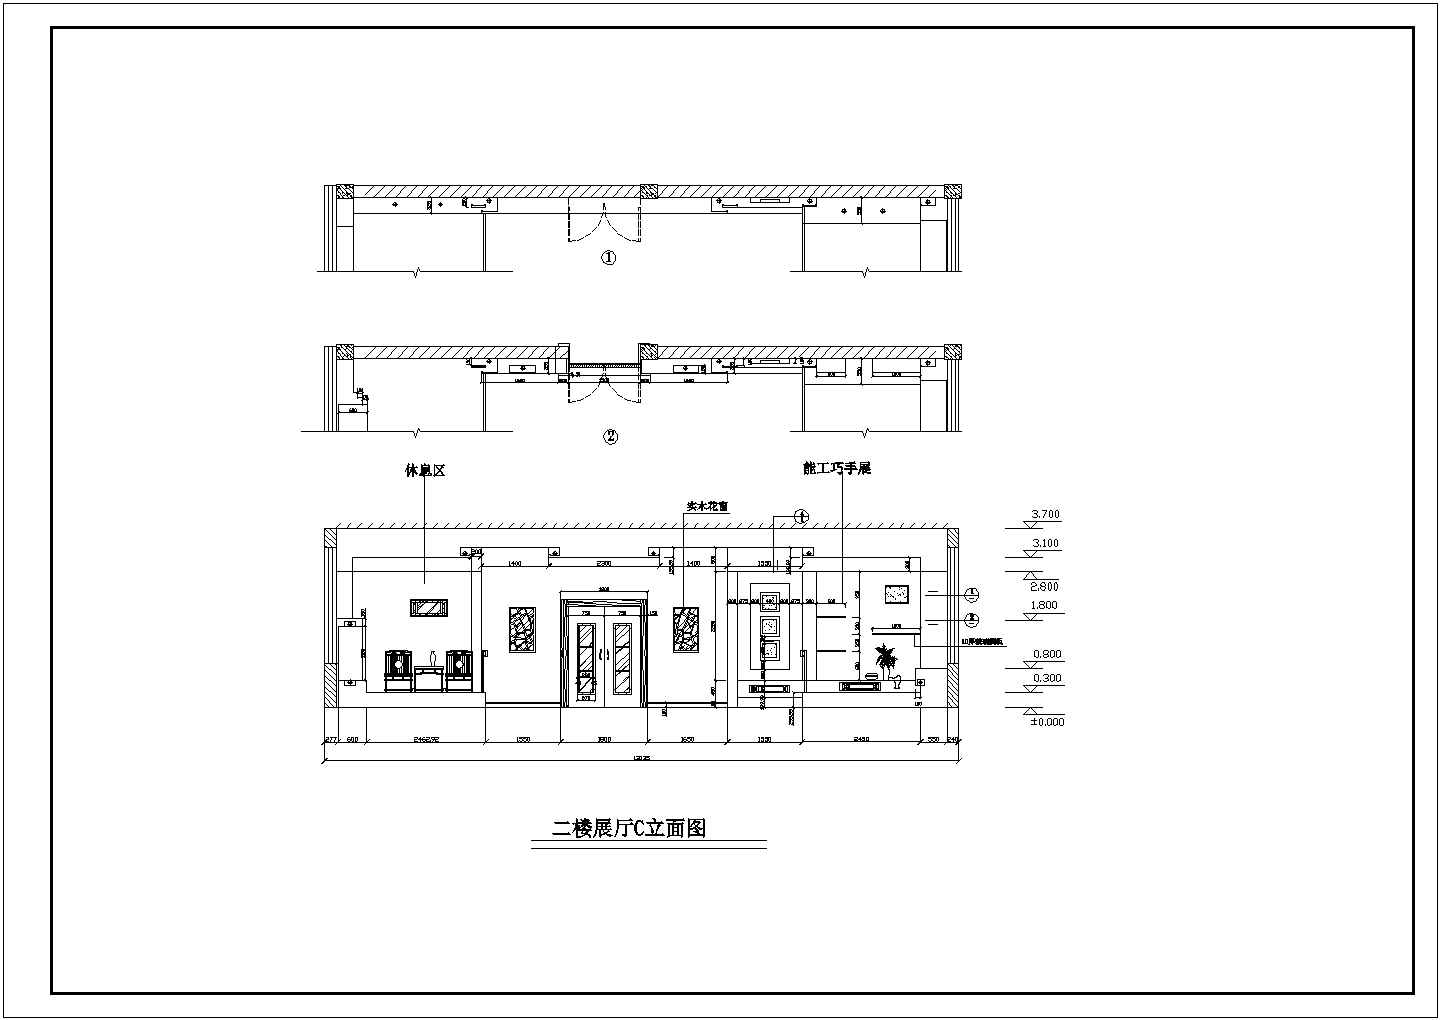 三层高档商品展示厅装修施工设计图